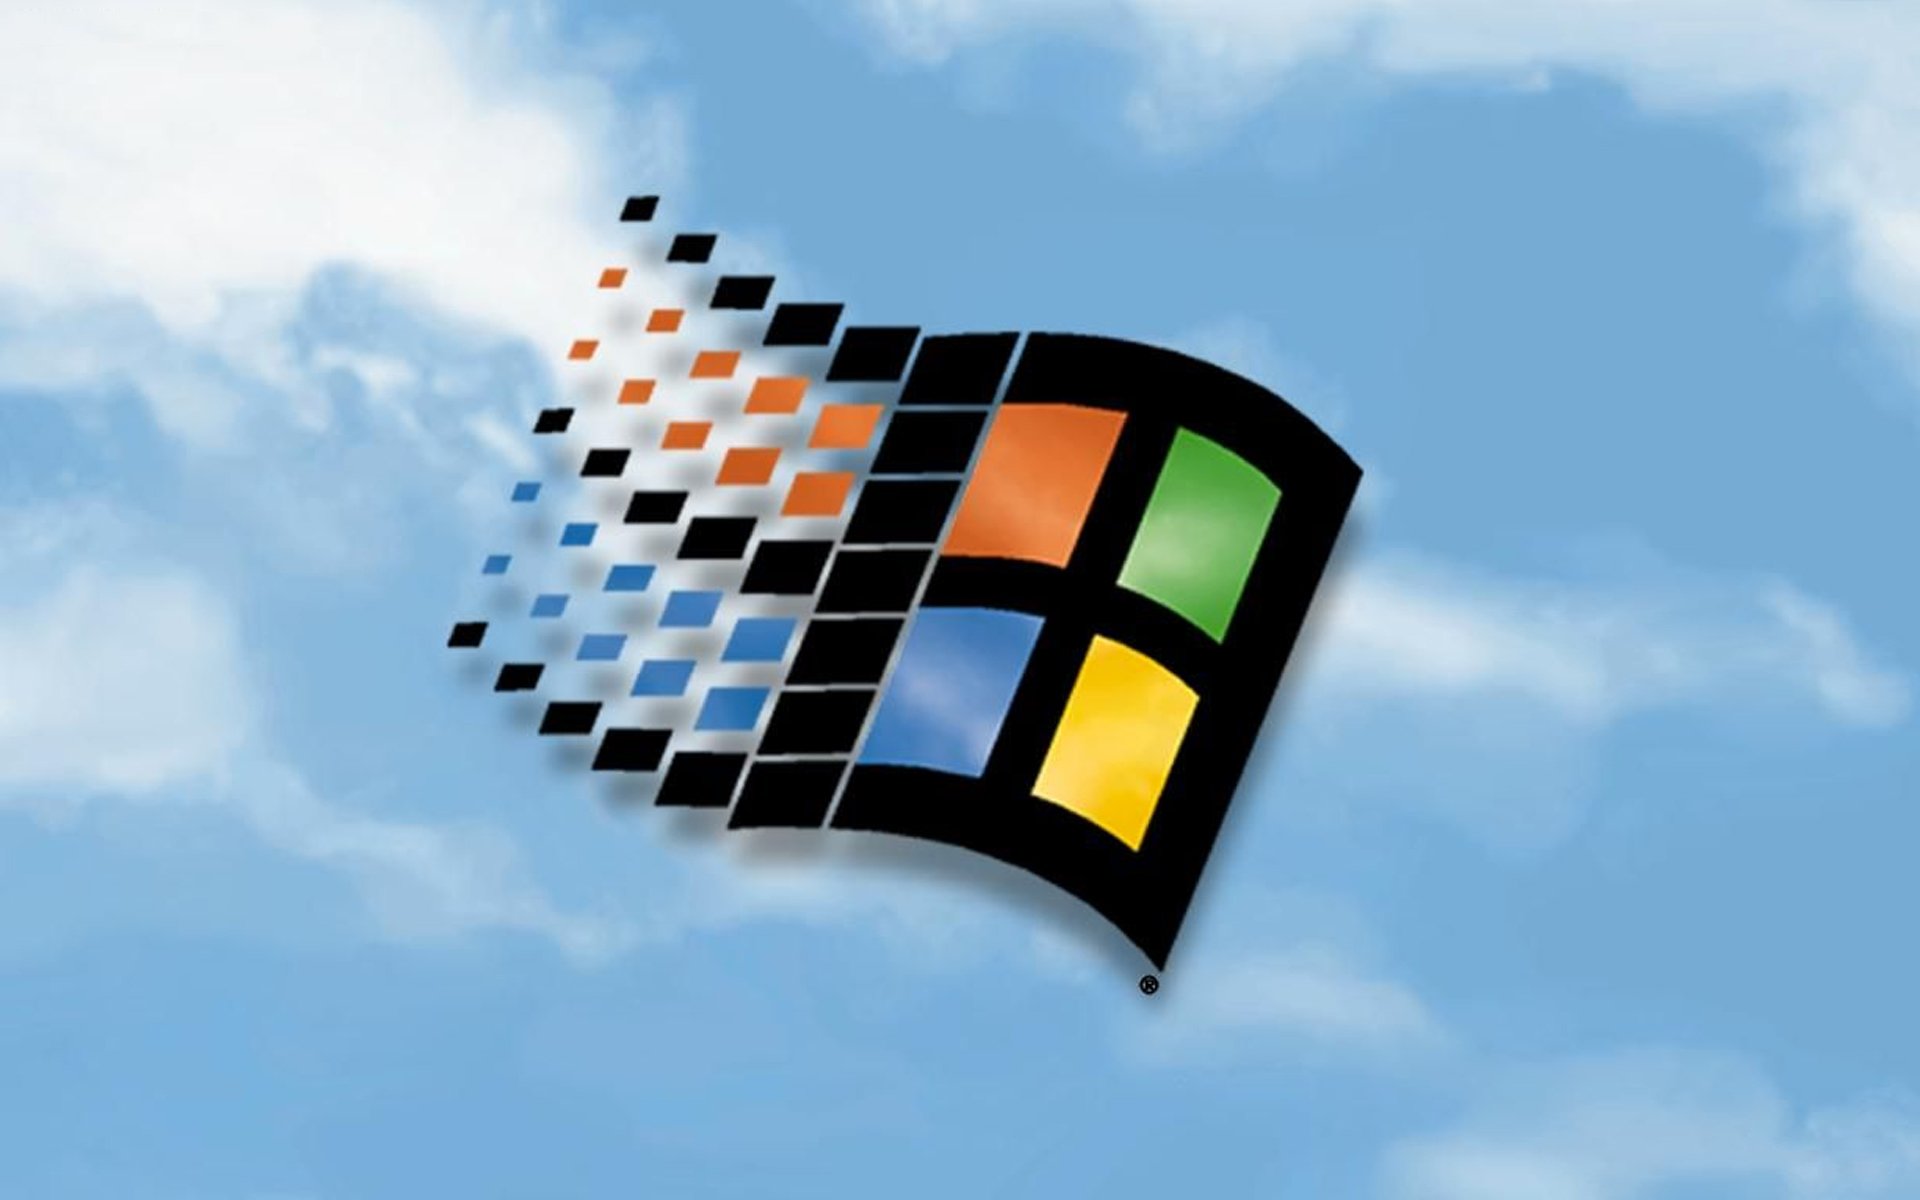 Τον ερχομό των Windows 10 προανήγγειλε η Microsoft